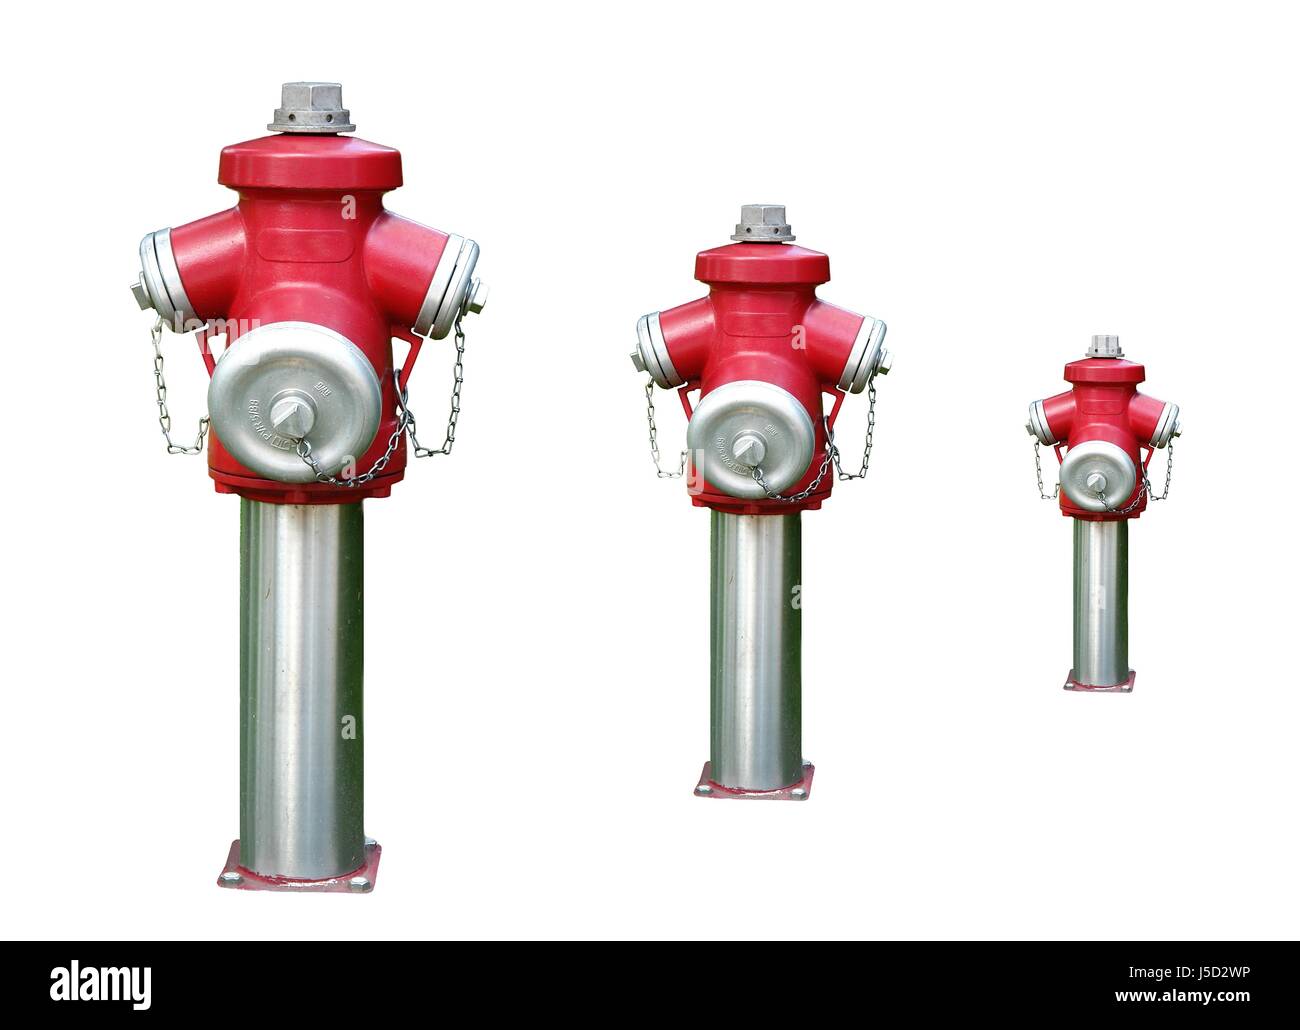 Incendie extincteur incendie fire brigade fireplug fireplugs l'approvisionnement en eau Banque D'Images